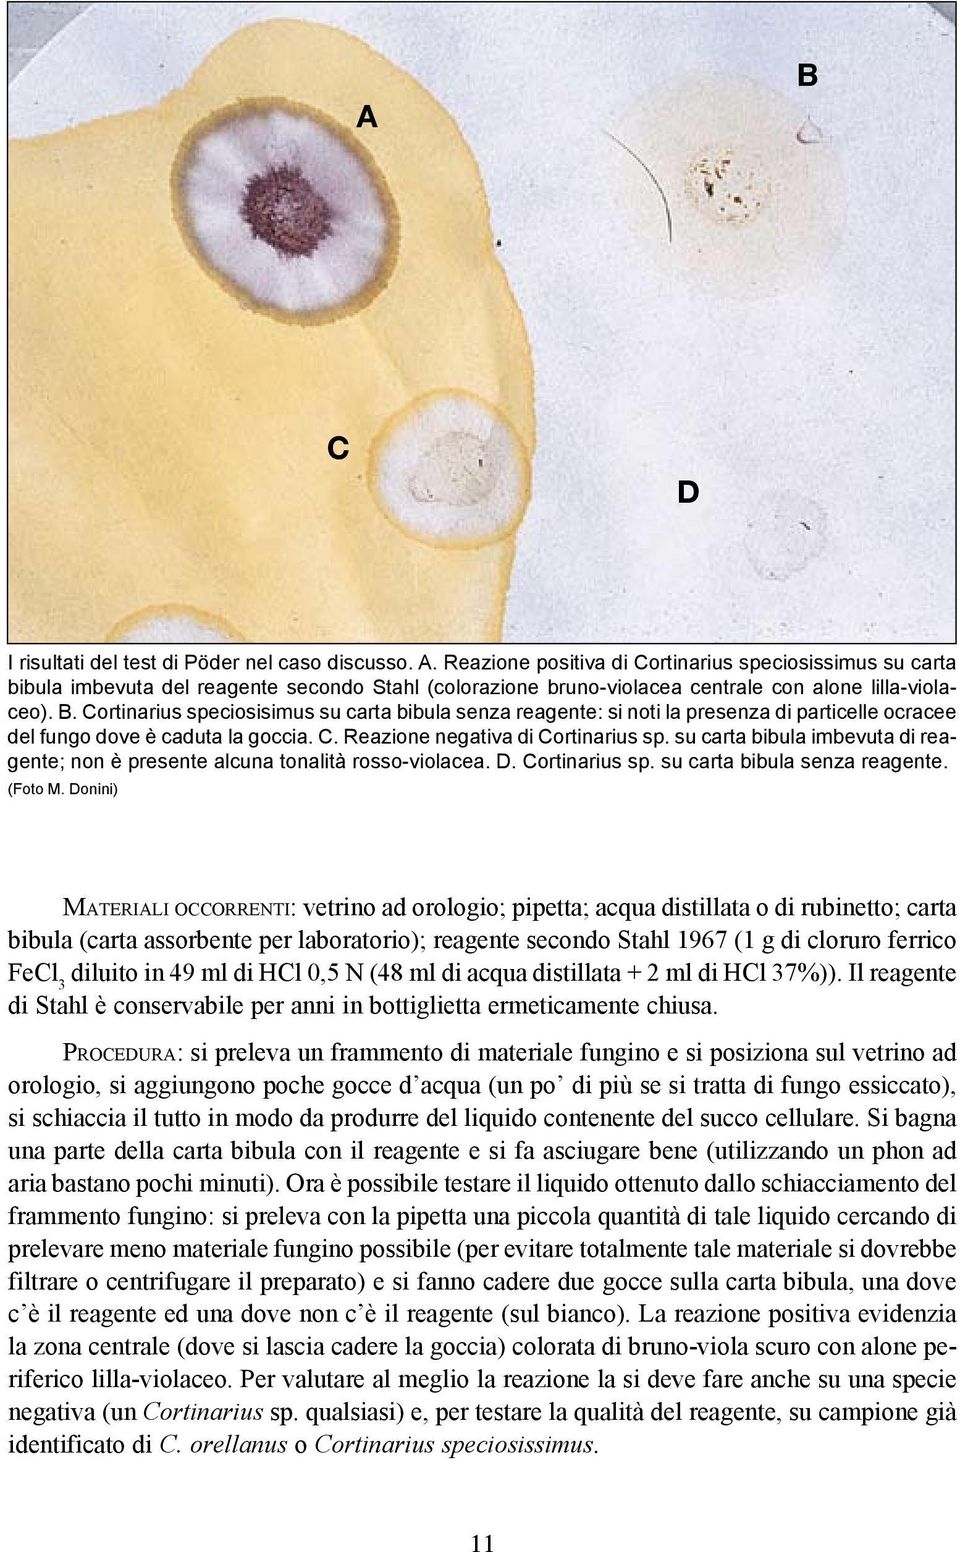 Cortinarius speciosisimus su carta bibula senza reagente: si noti la presenza di particelle ocracee del fungo dove è caduta la goccia. C. Reazione negativa di Cortinarius sp.